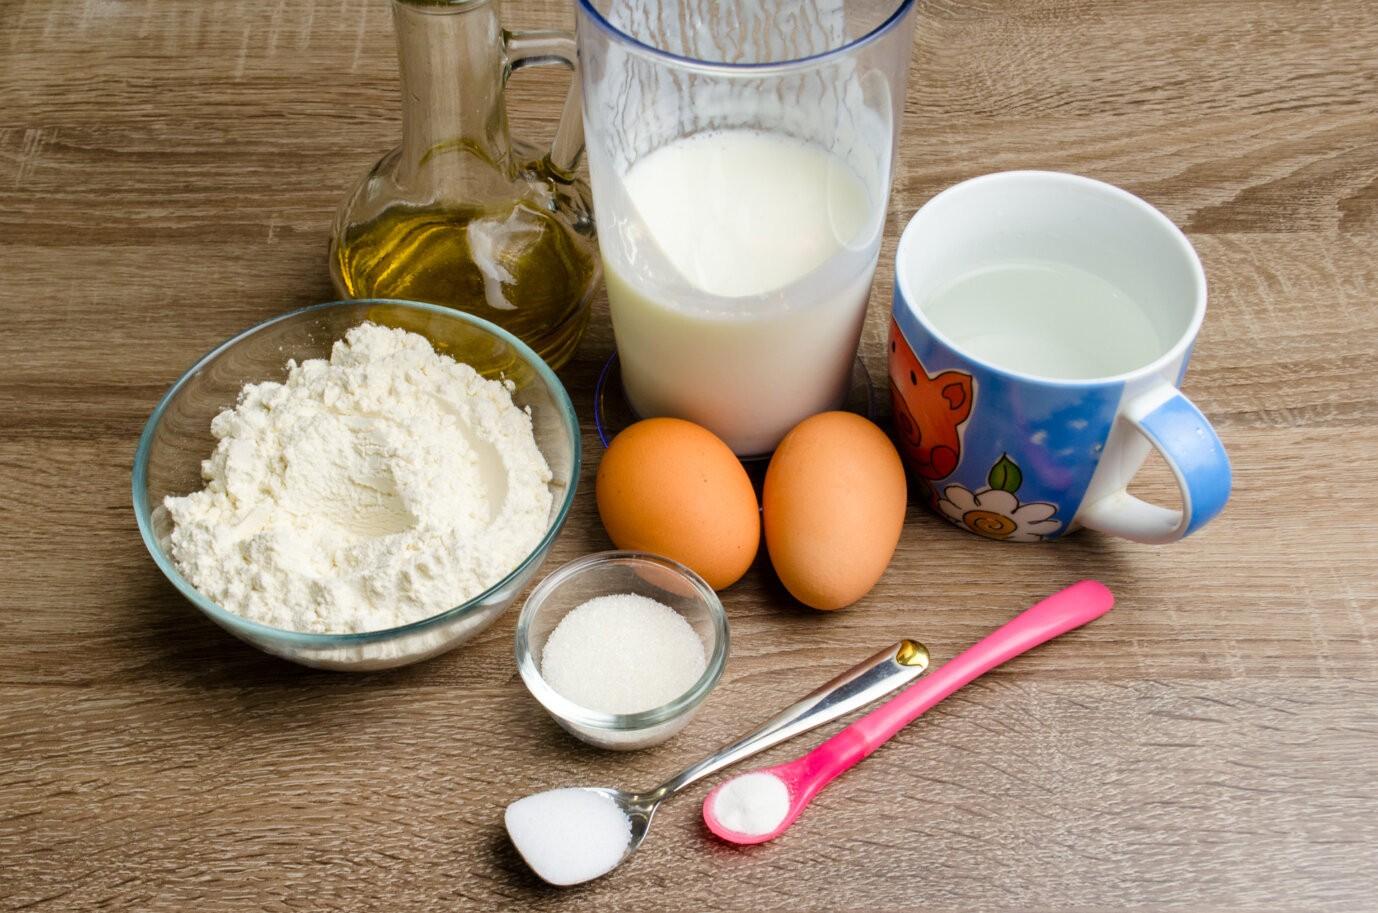 Кефир 1 яйцо мука сахар. Ингредиенты для блинов. Продукты для приготовления блинов. Ингредиенты для блинов на молоке. Ингредиенты для блинов на кефире.